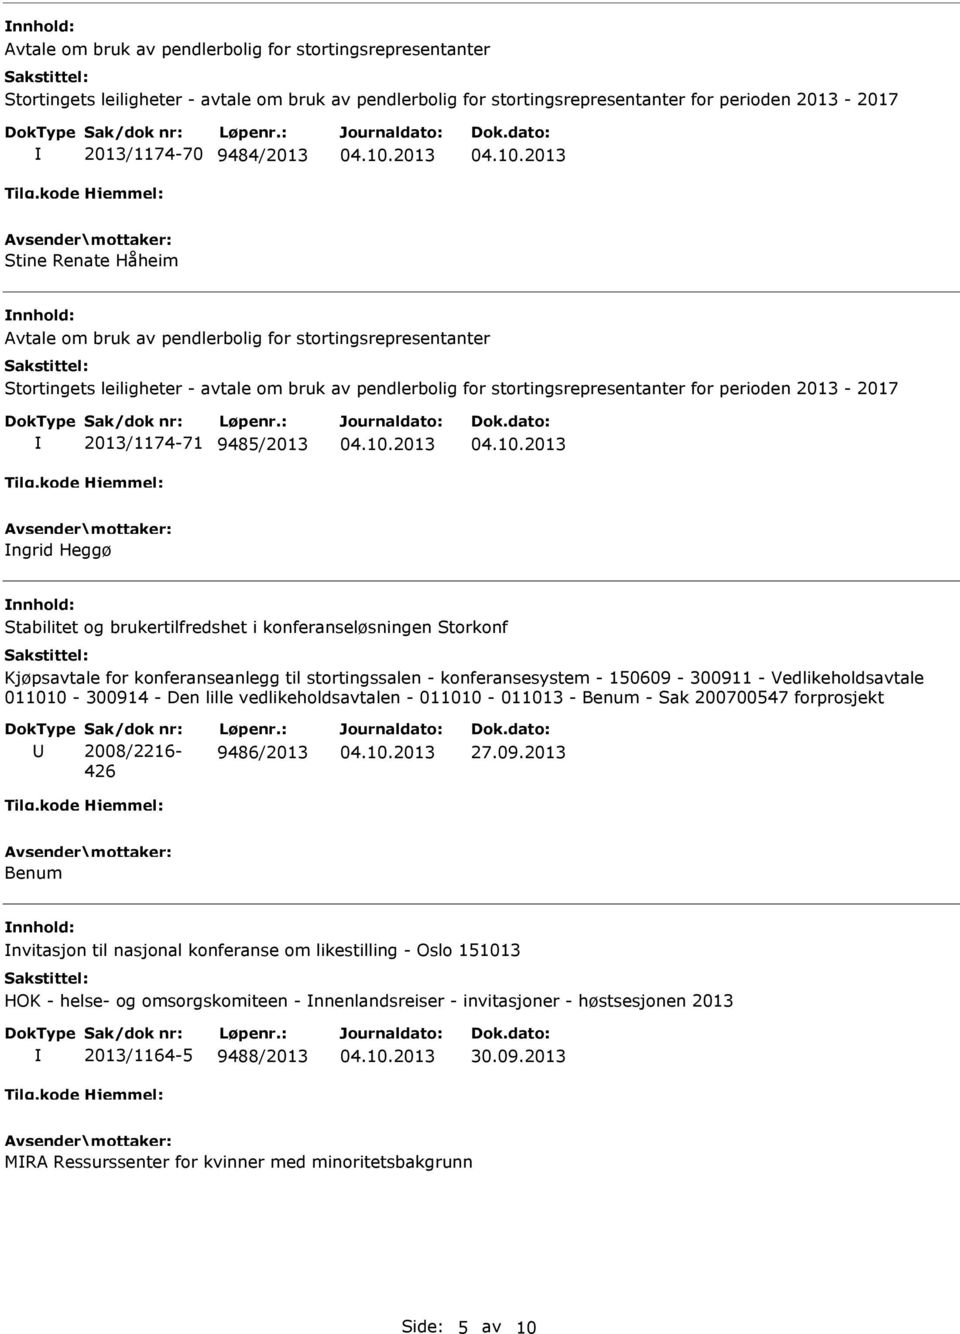 9485/2013 ngrid Heggø Stabilitet og brukertilfredshet i konferanseløsningen Storkonf Kjøpsavtale for konferanseanlegg til stortingssalen - konferansesystem - 150609-300911 - Vedlikeholdsavtale